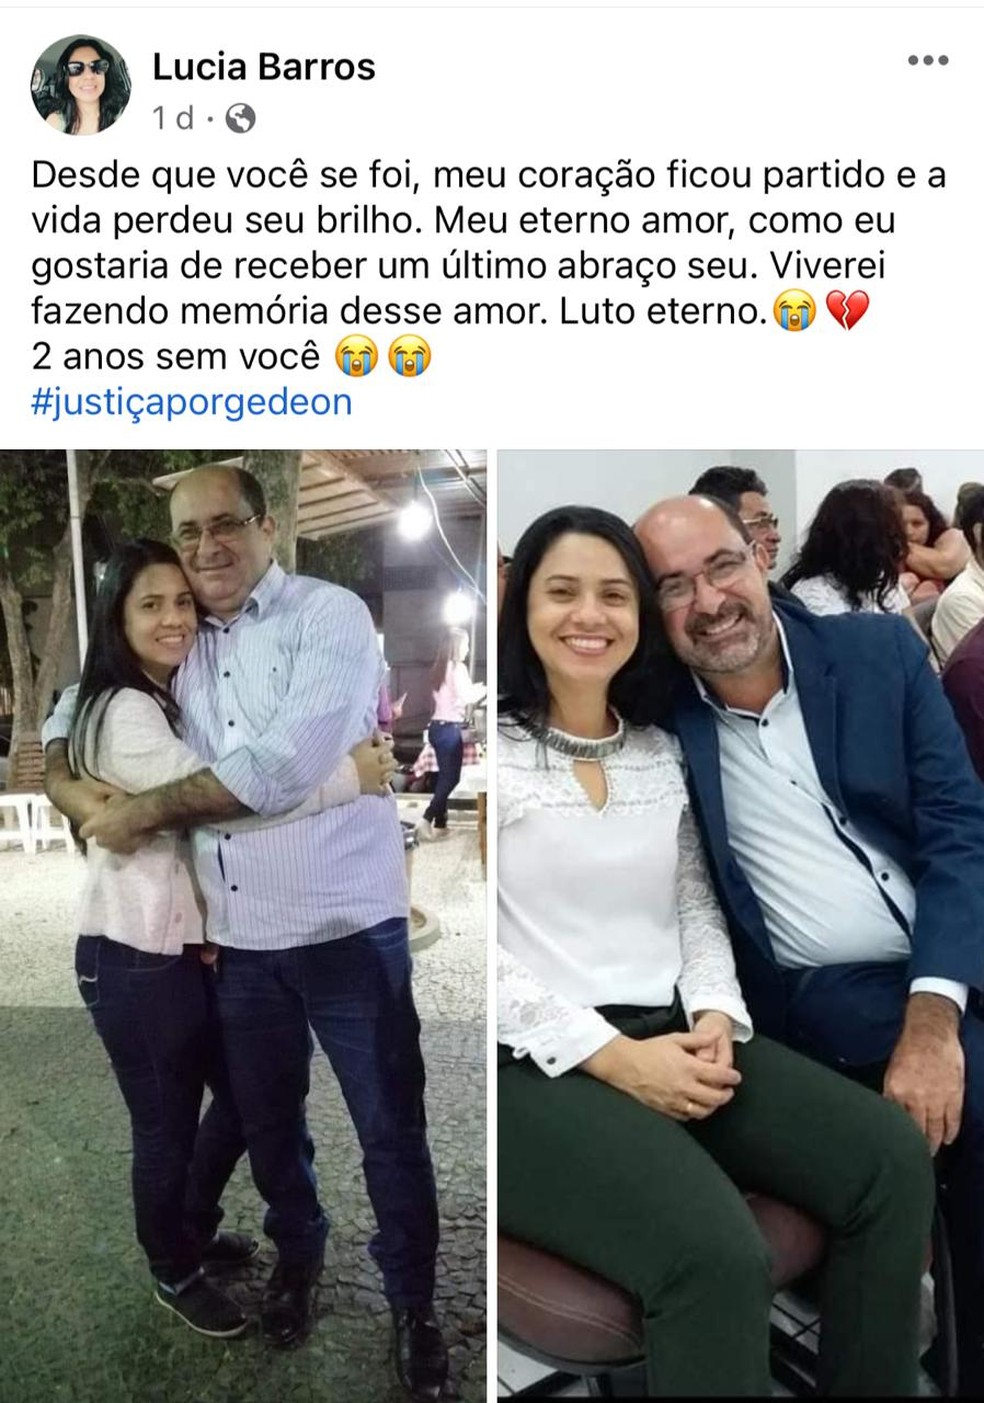 Víuva de Gedeon Barros, Lúcia Barros, pediu justiça pela morte do marido em postagem  — Foto: Reprodução